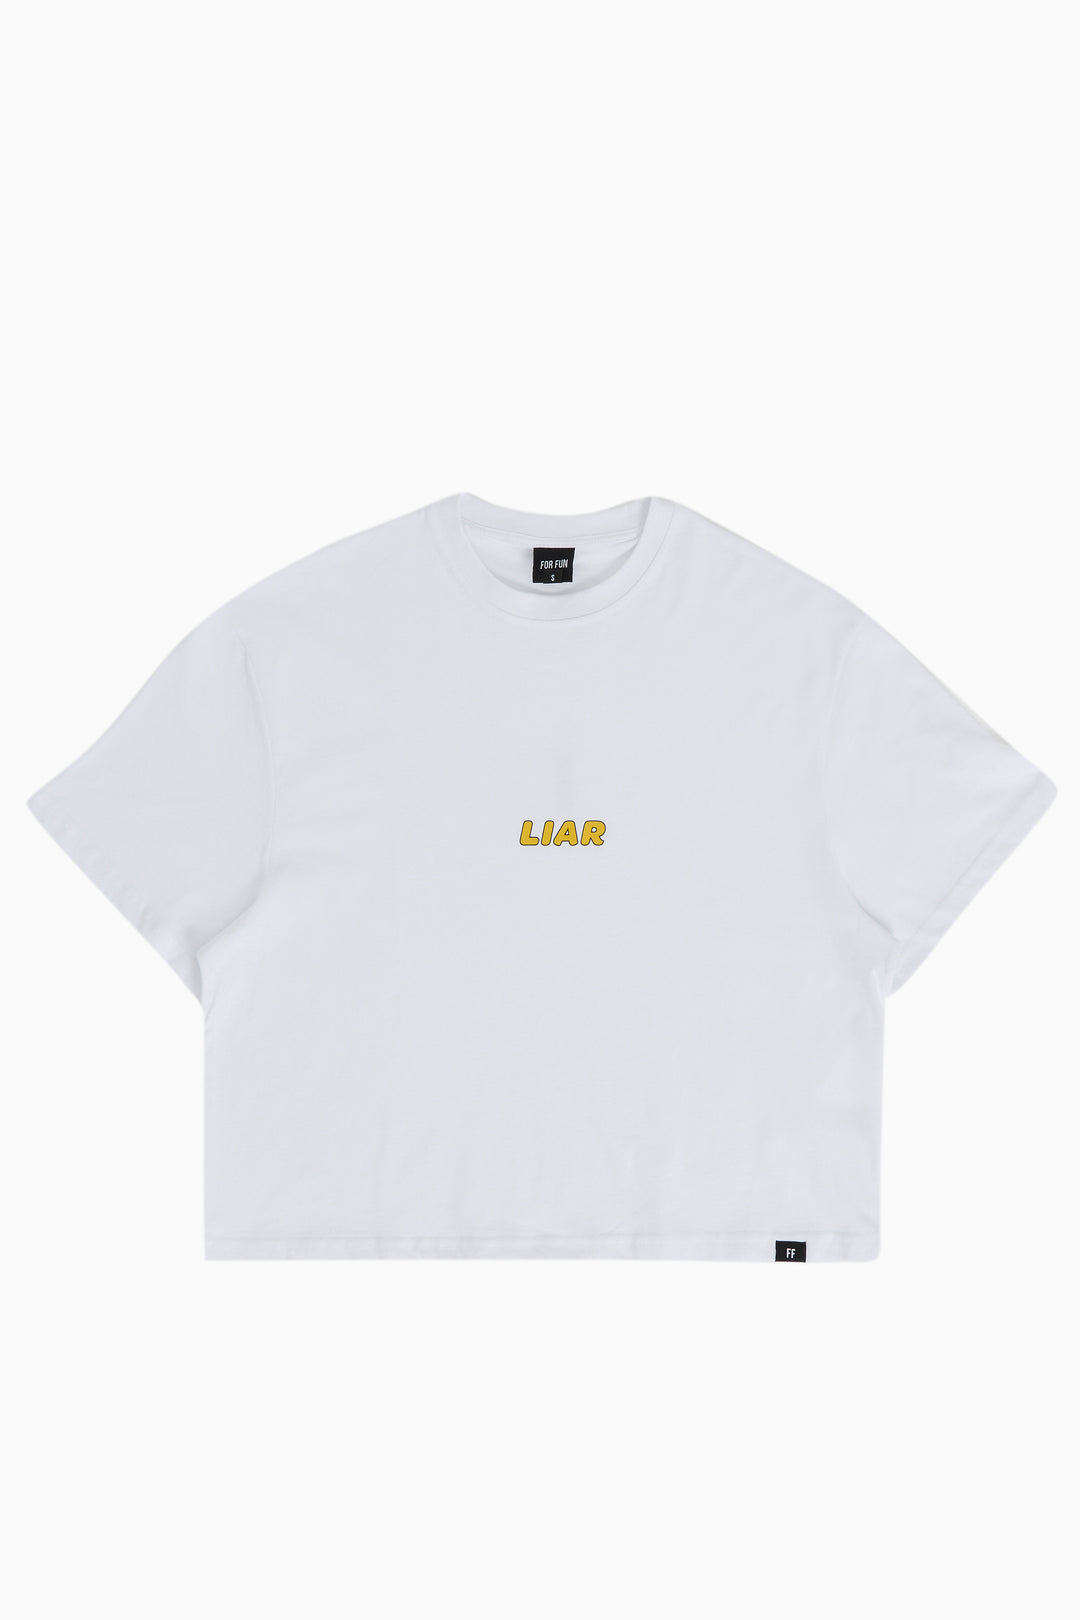 Liar / Women Oversize T-shirt